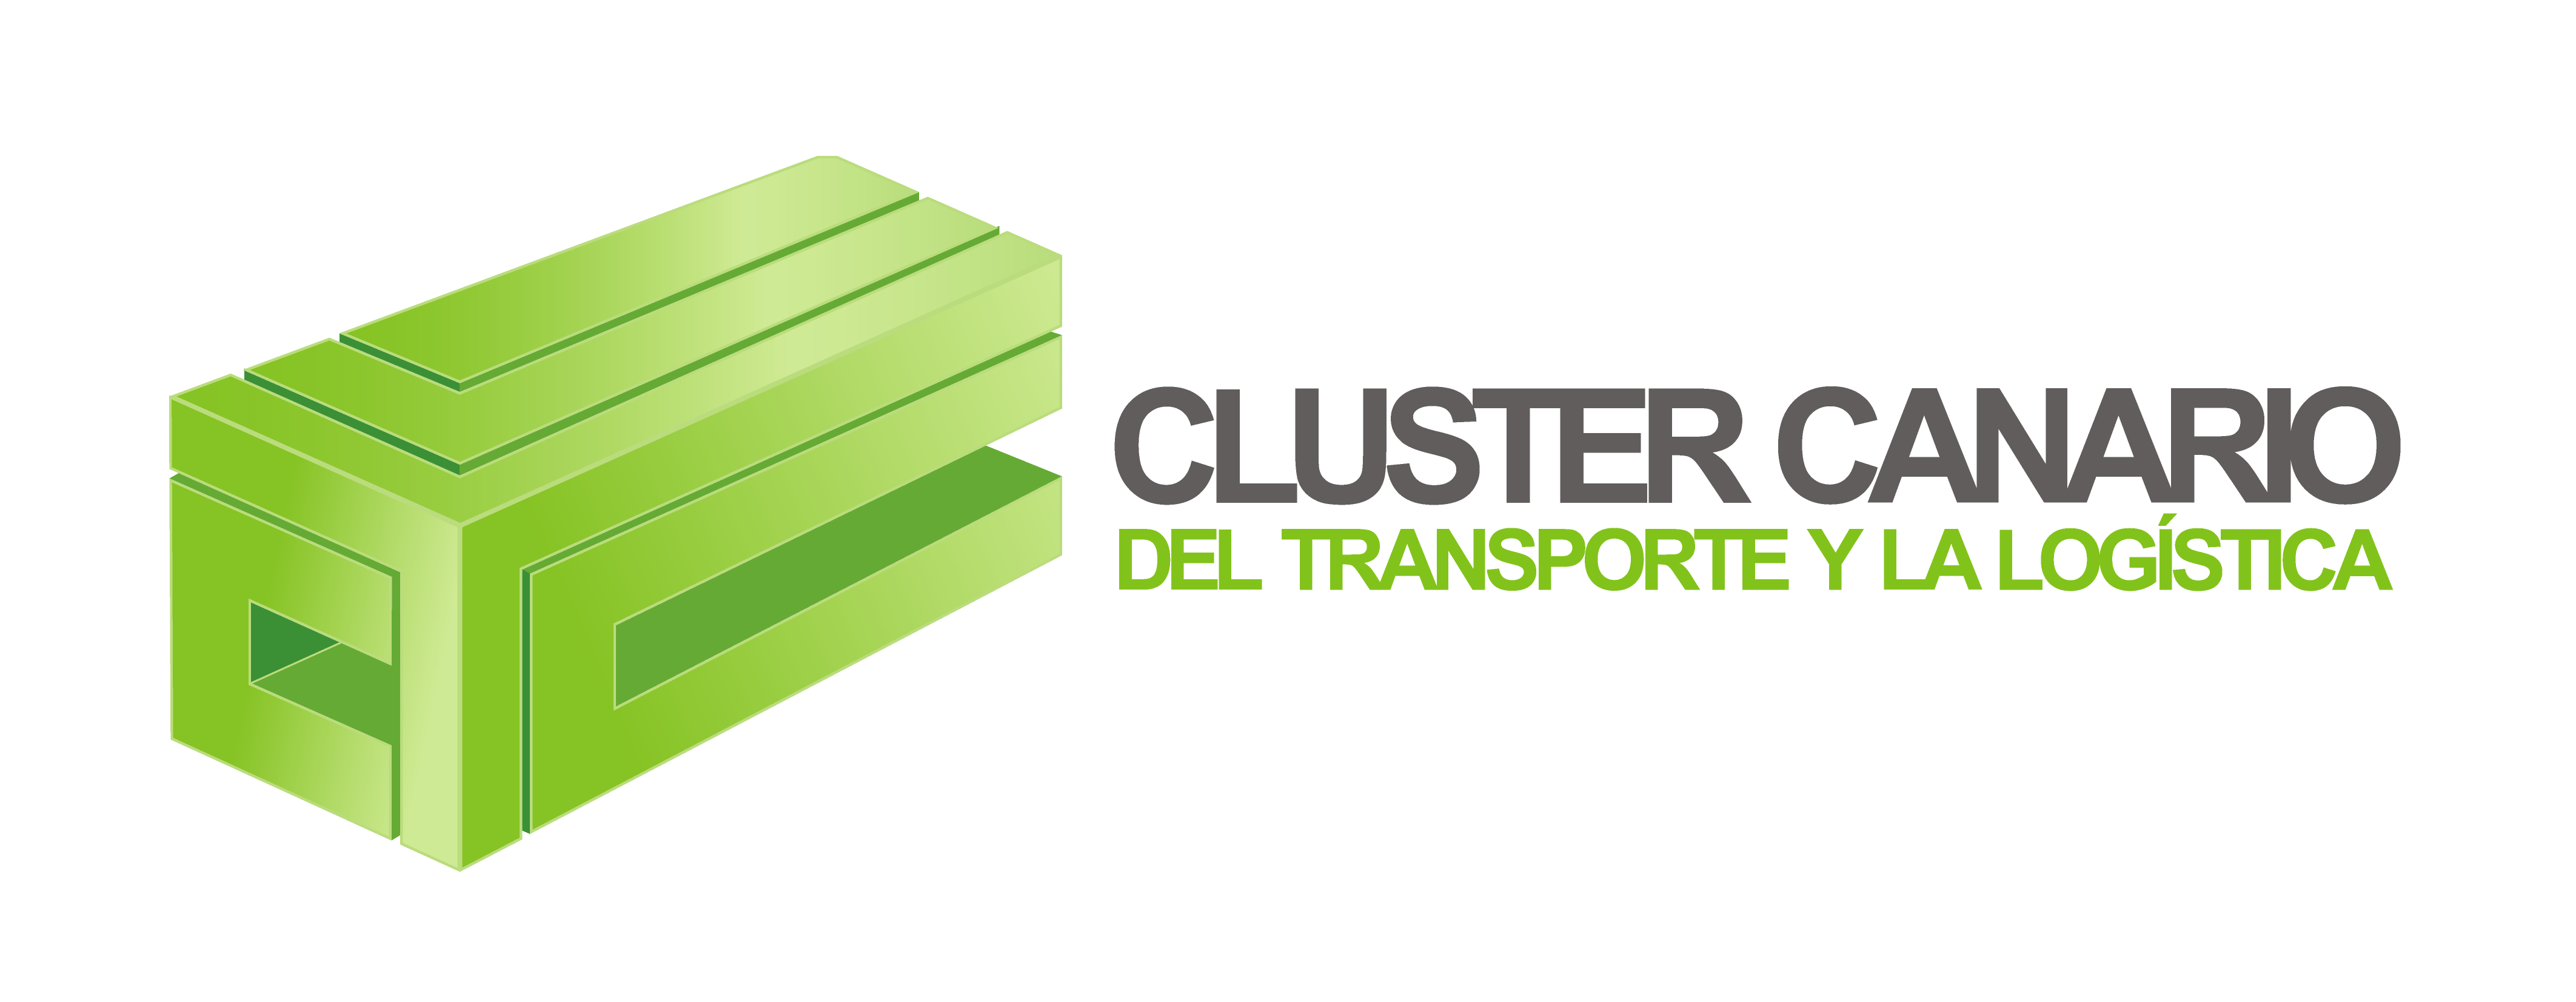 Cluster Tecnologico del Transporte y La Logistica